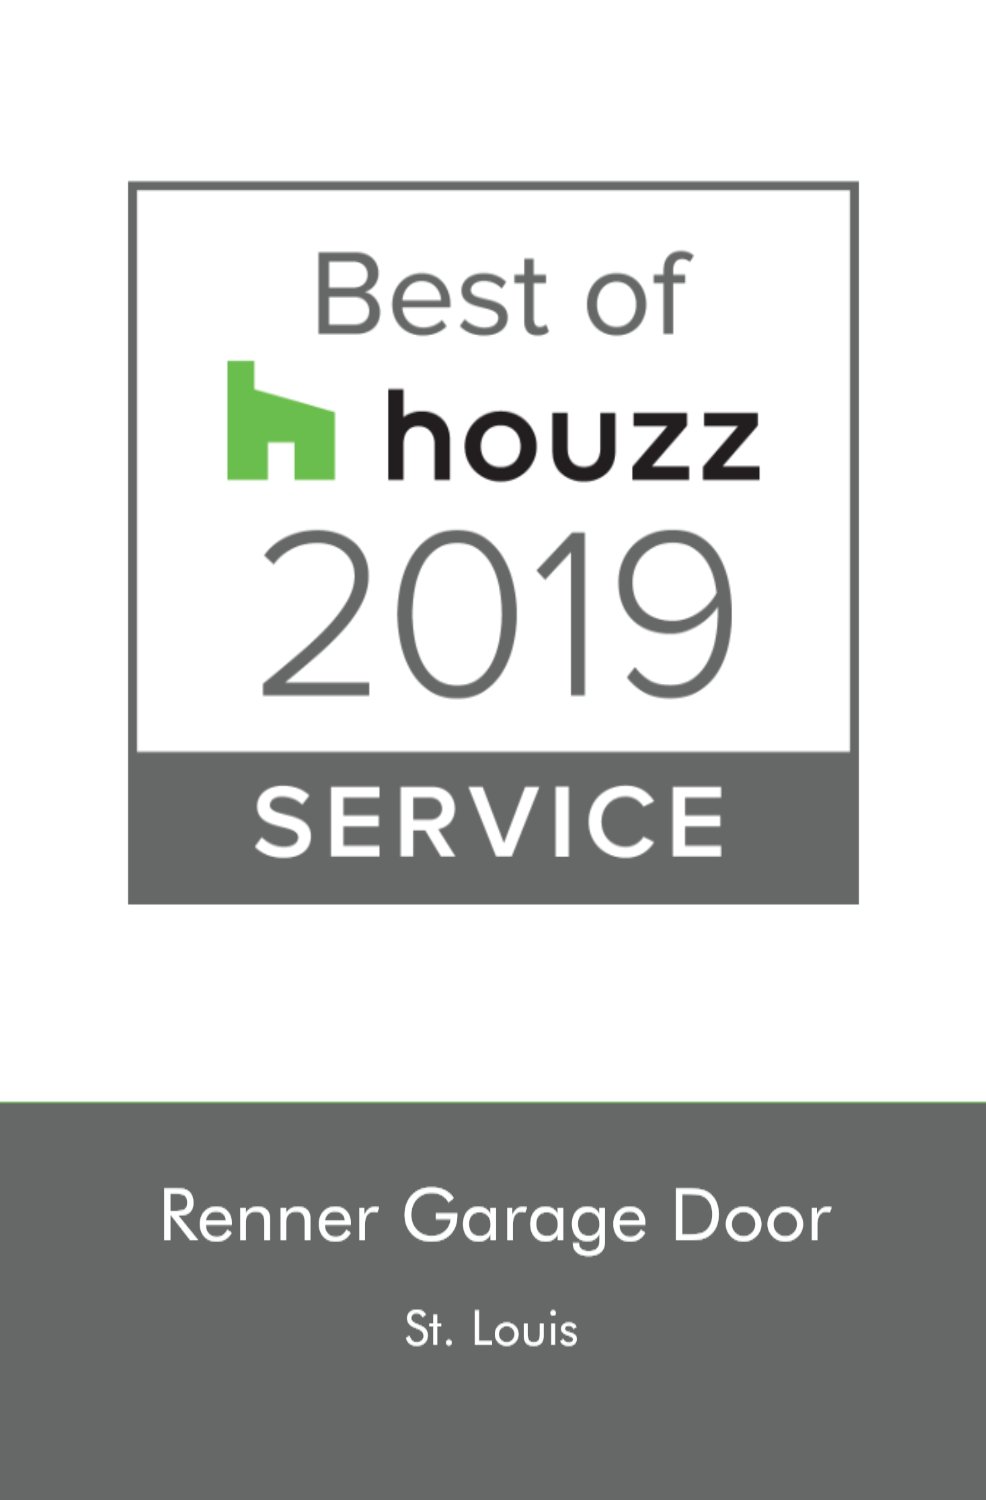 Renner Garage Door of St. Louis Awarded Best Of Houzz 2019